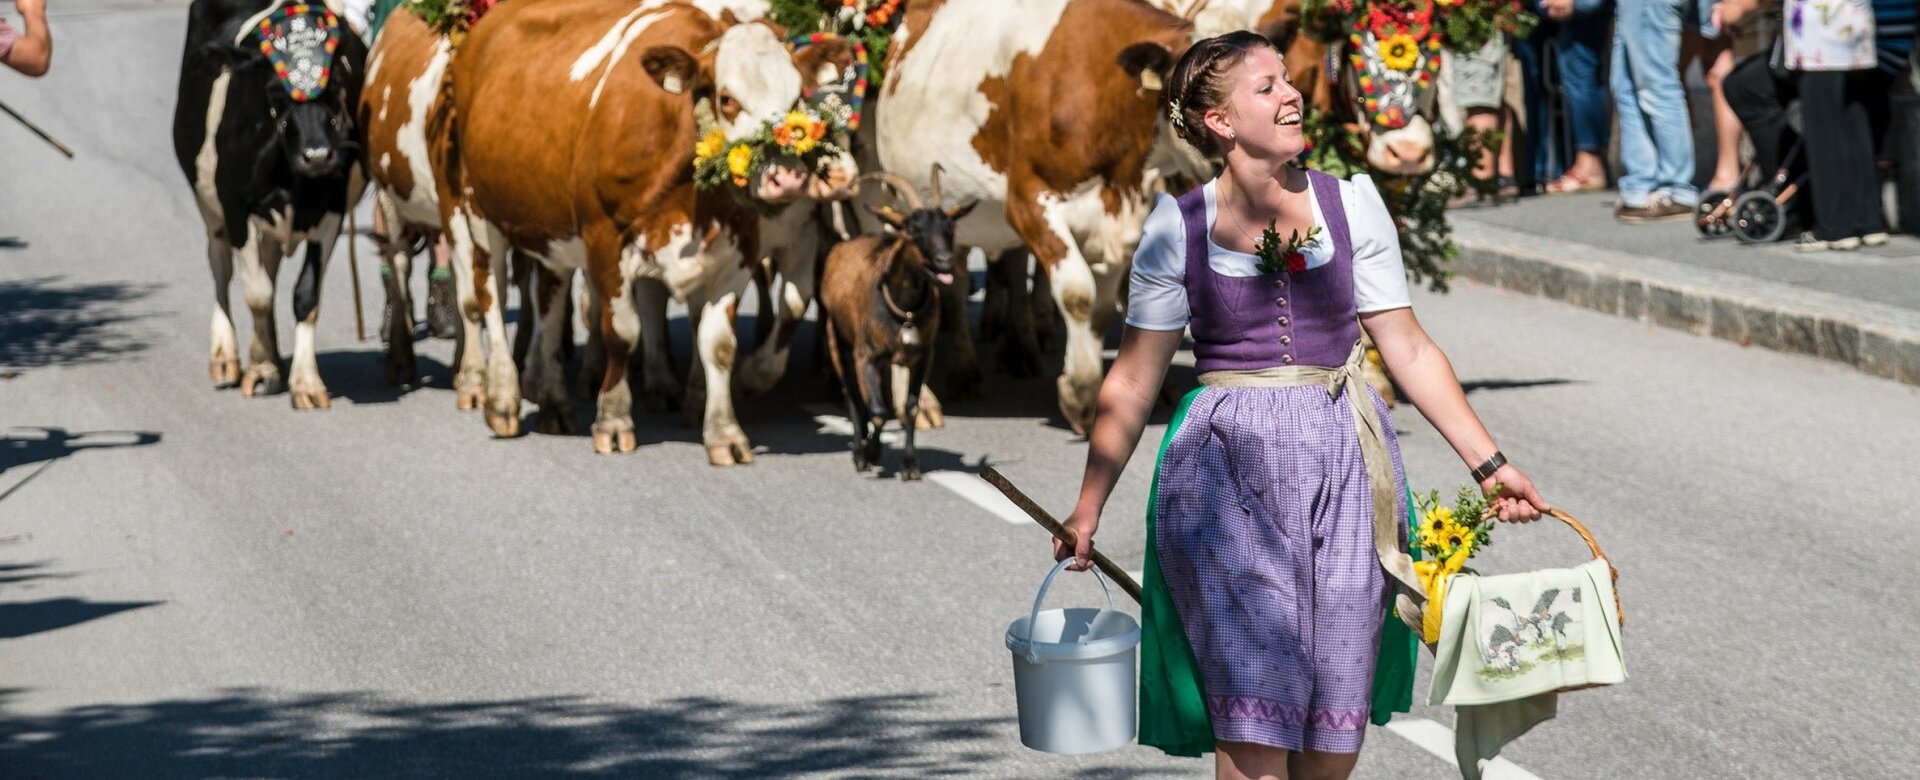 Herding the cows down in Filzmoos | © Filzmoos Tourismus